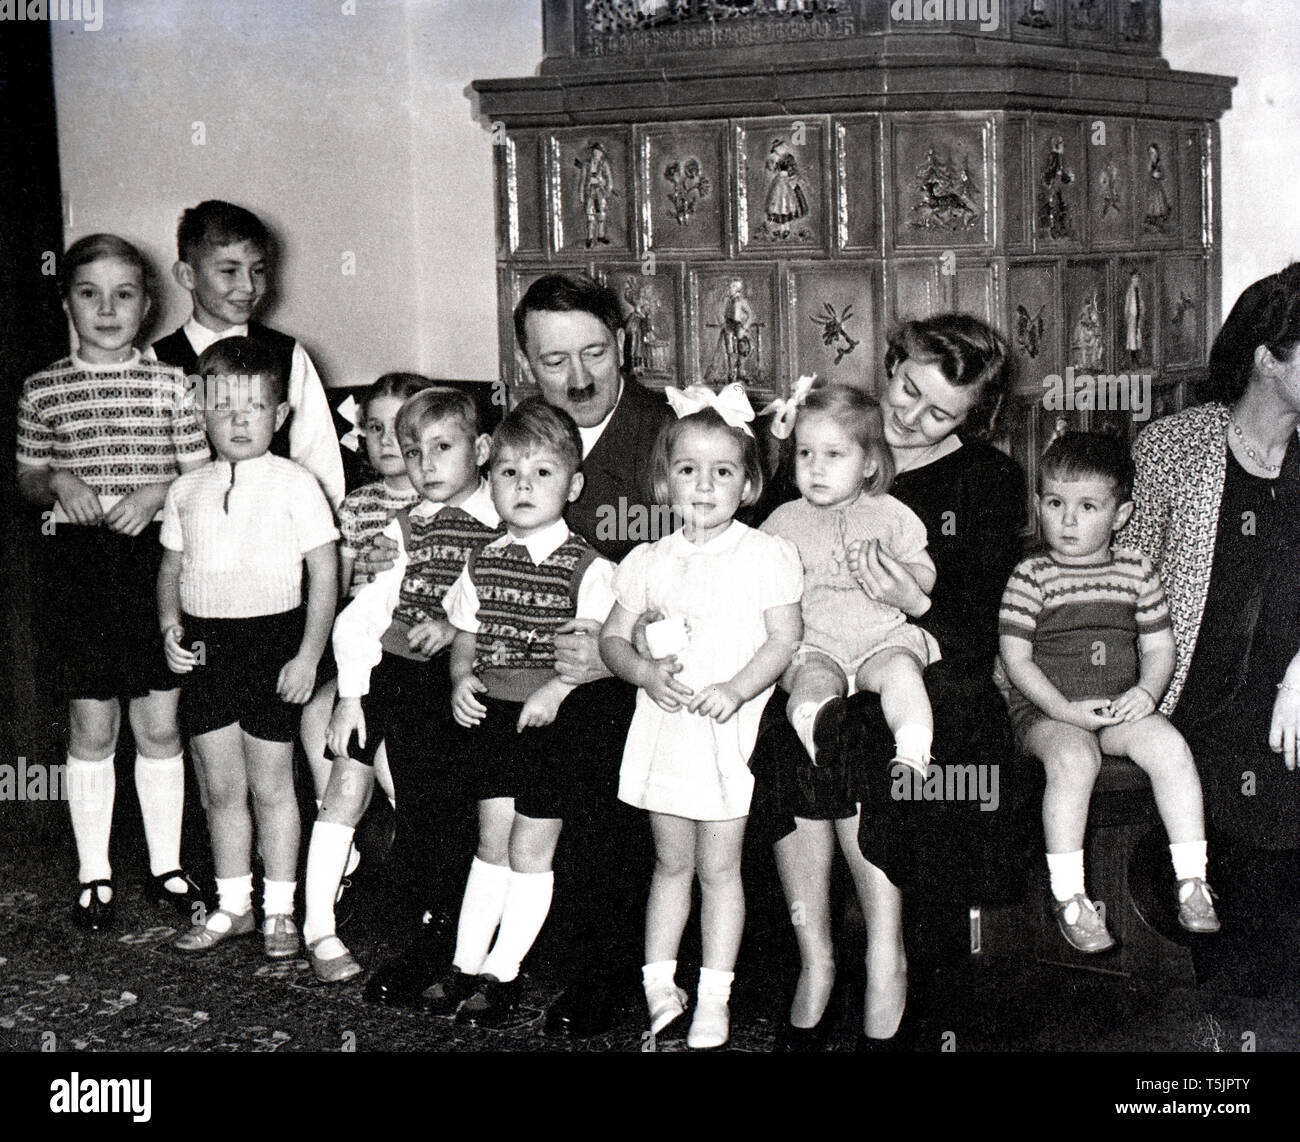 Eva Braun Collection (osam) - Original Caption: Bormanns und Speers - Kinder wünschen ein Gutes 1940 / Bormann and Speer - Children wish a happy 1940 - Adolf Hitler with group of children Stock Photo